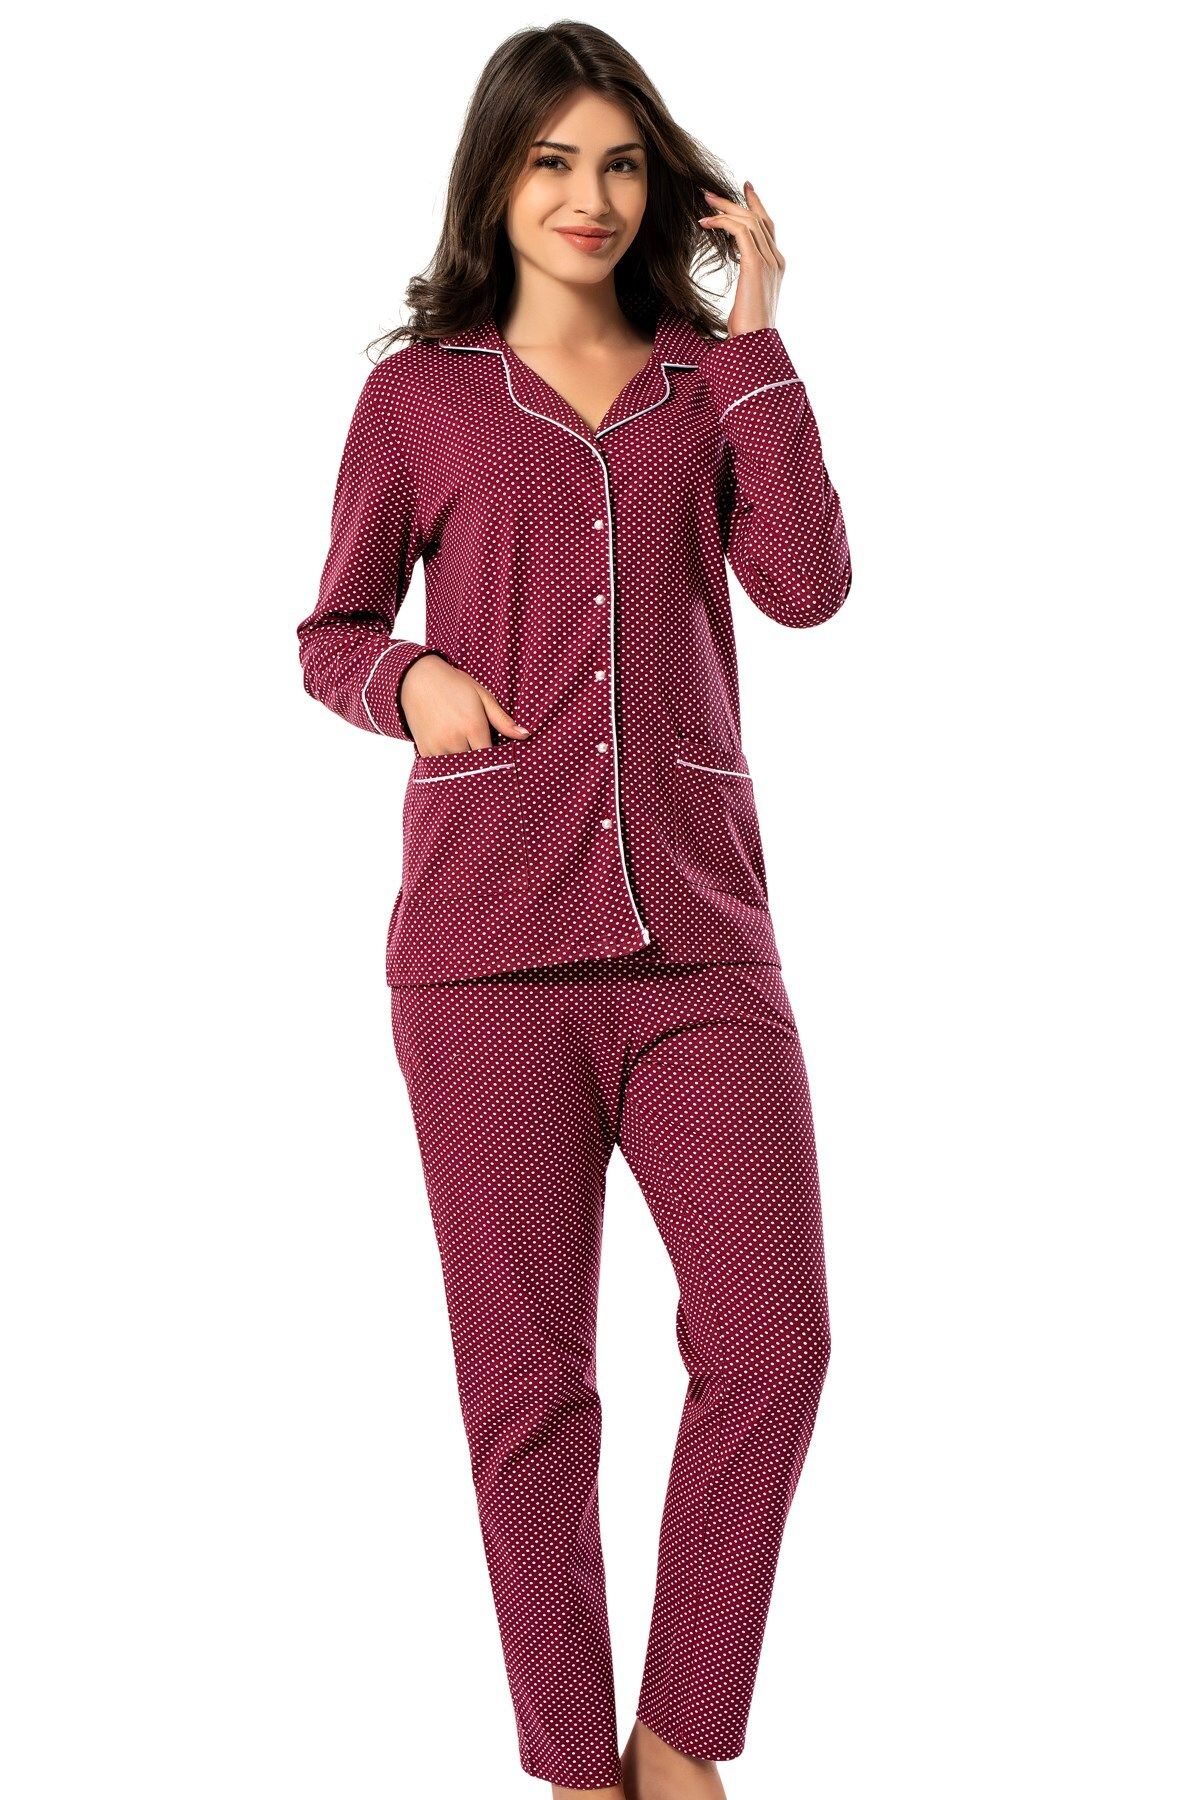 ERDEM İÇ GİYİM 8607b Bordo Erdem Kışlık Puantiyeli Pijama